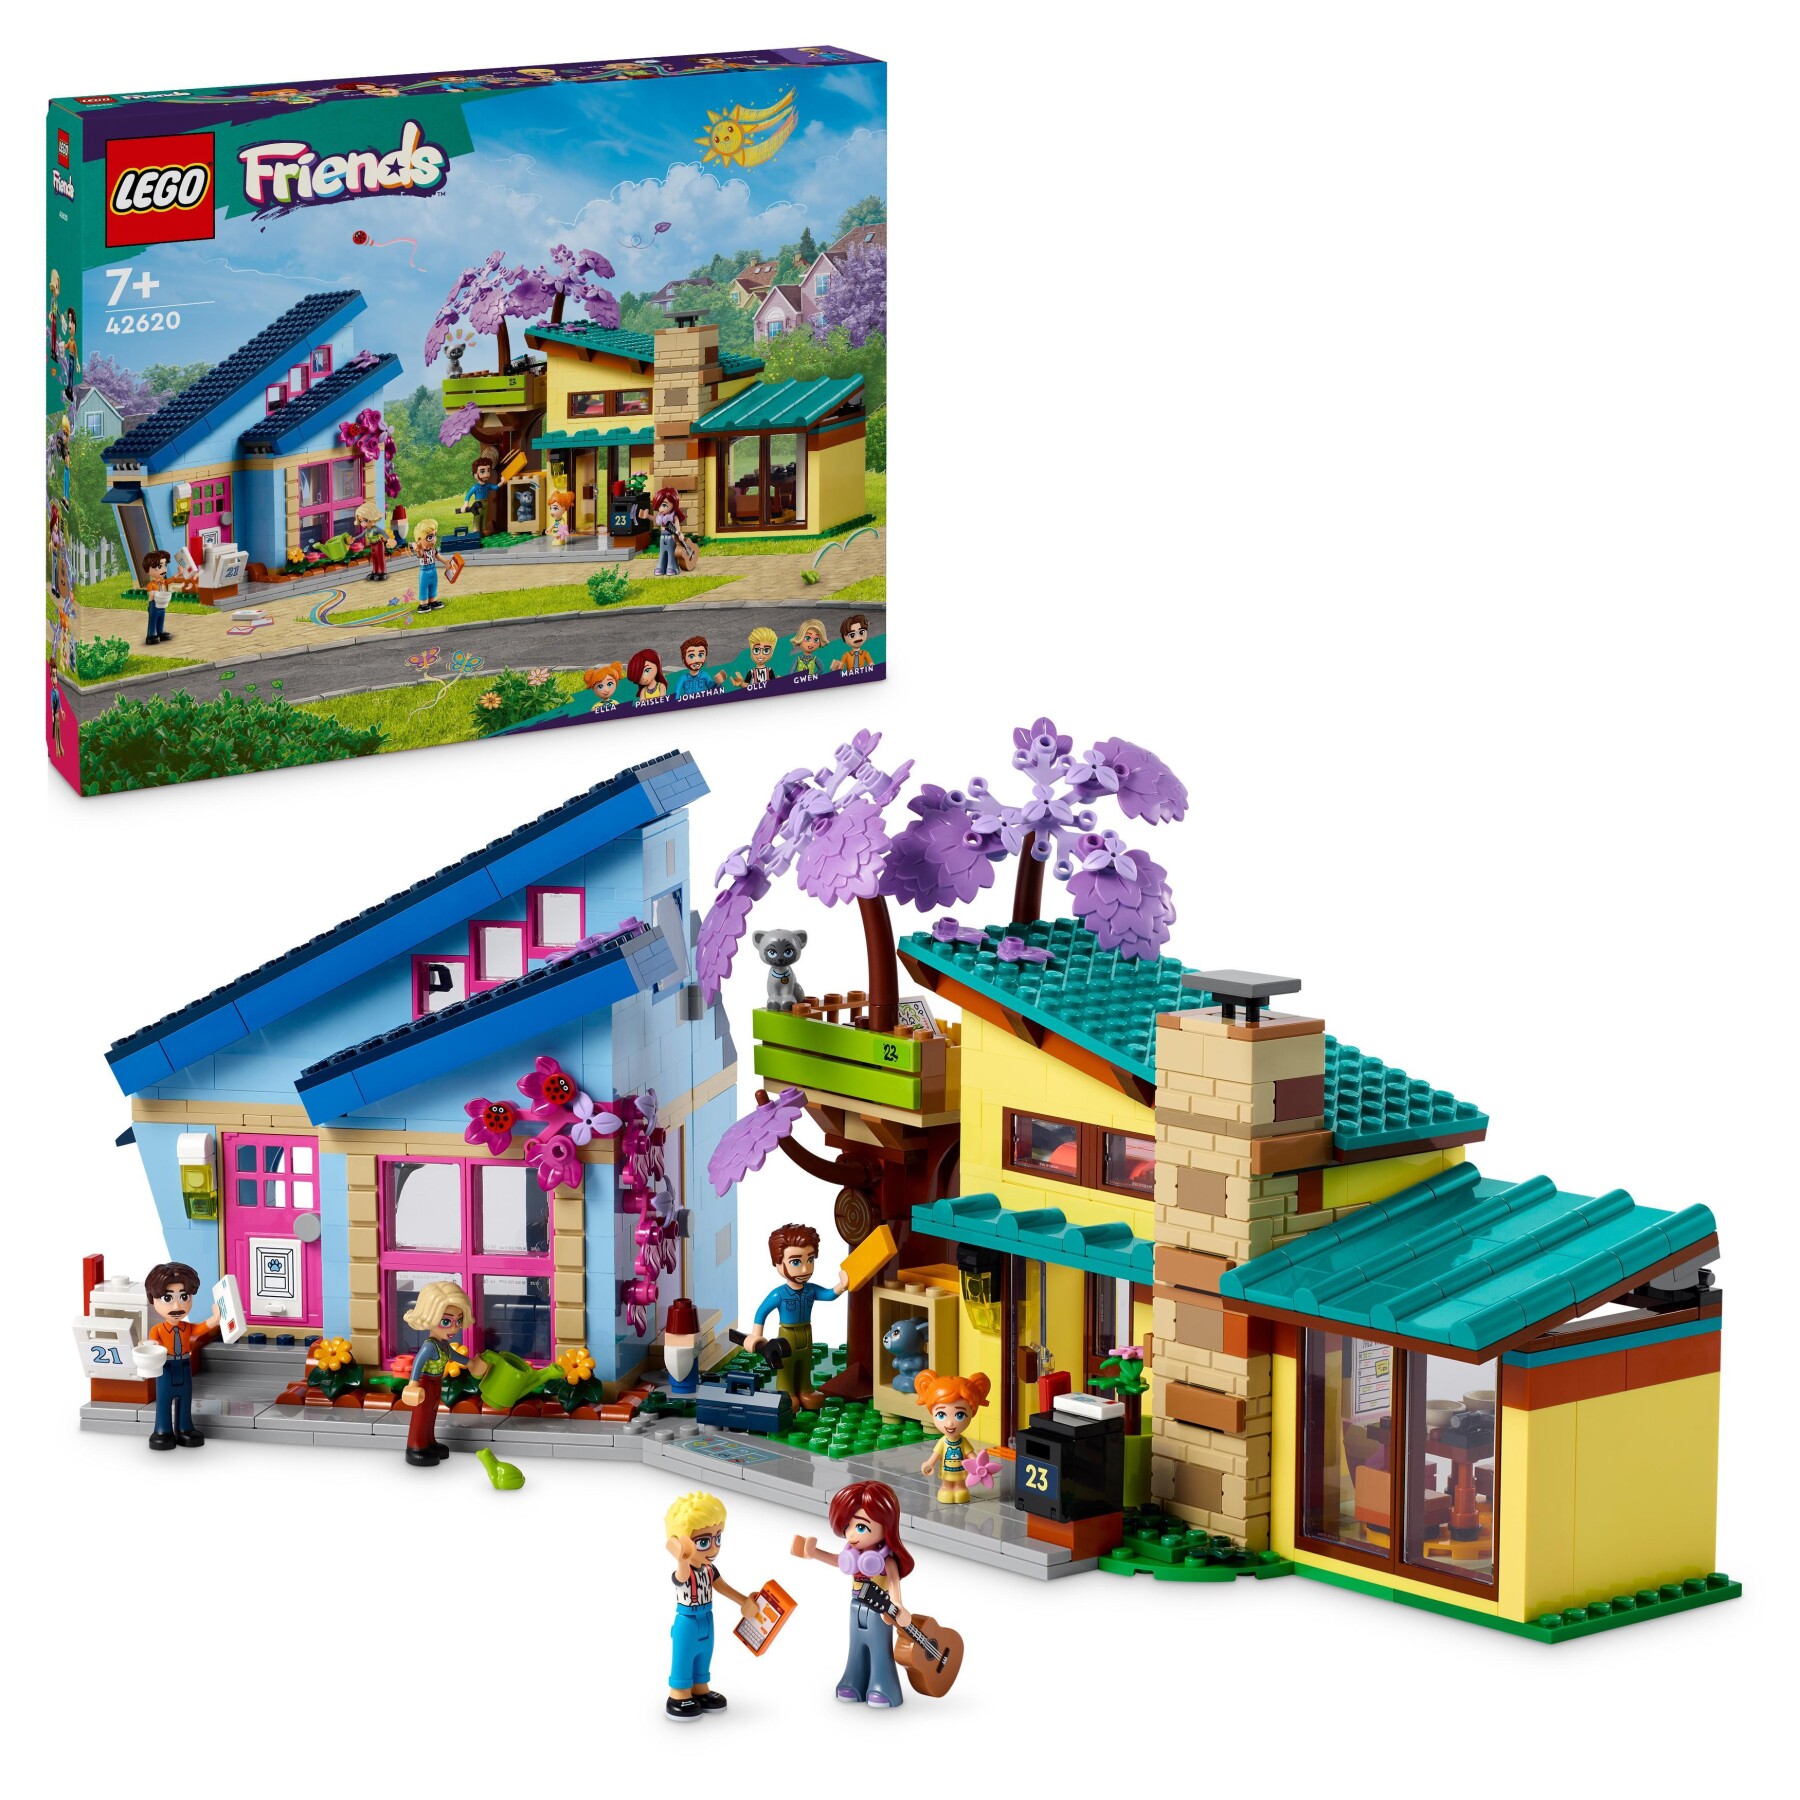 Lego friends 42620 le case di olly e paisley, giochi per bambini di 7+ anni con 2 case giocattolo da costruire e 6 personaggi - LEGO FRIENDS